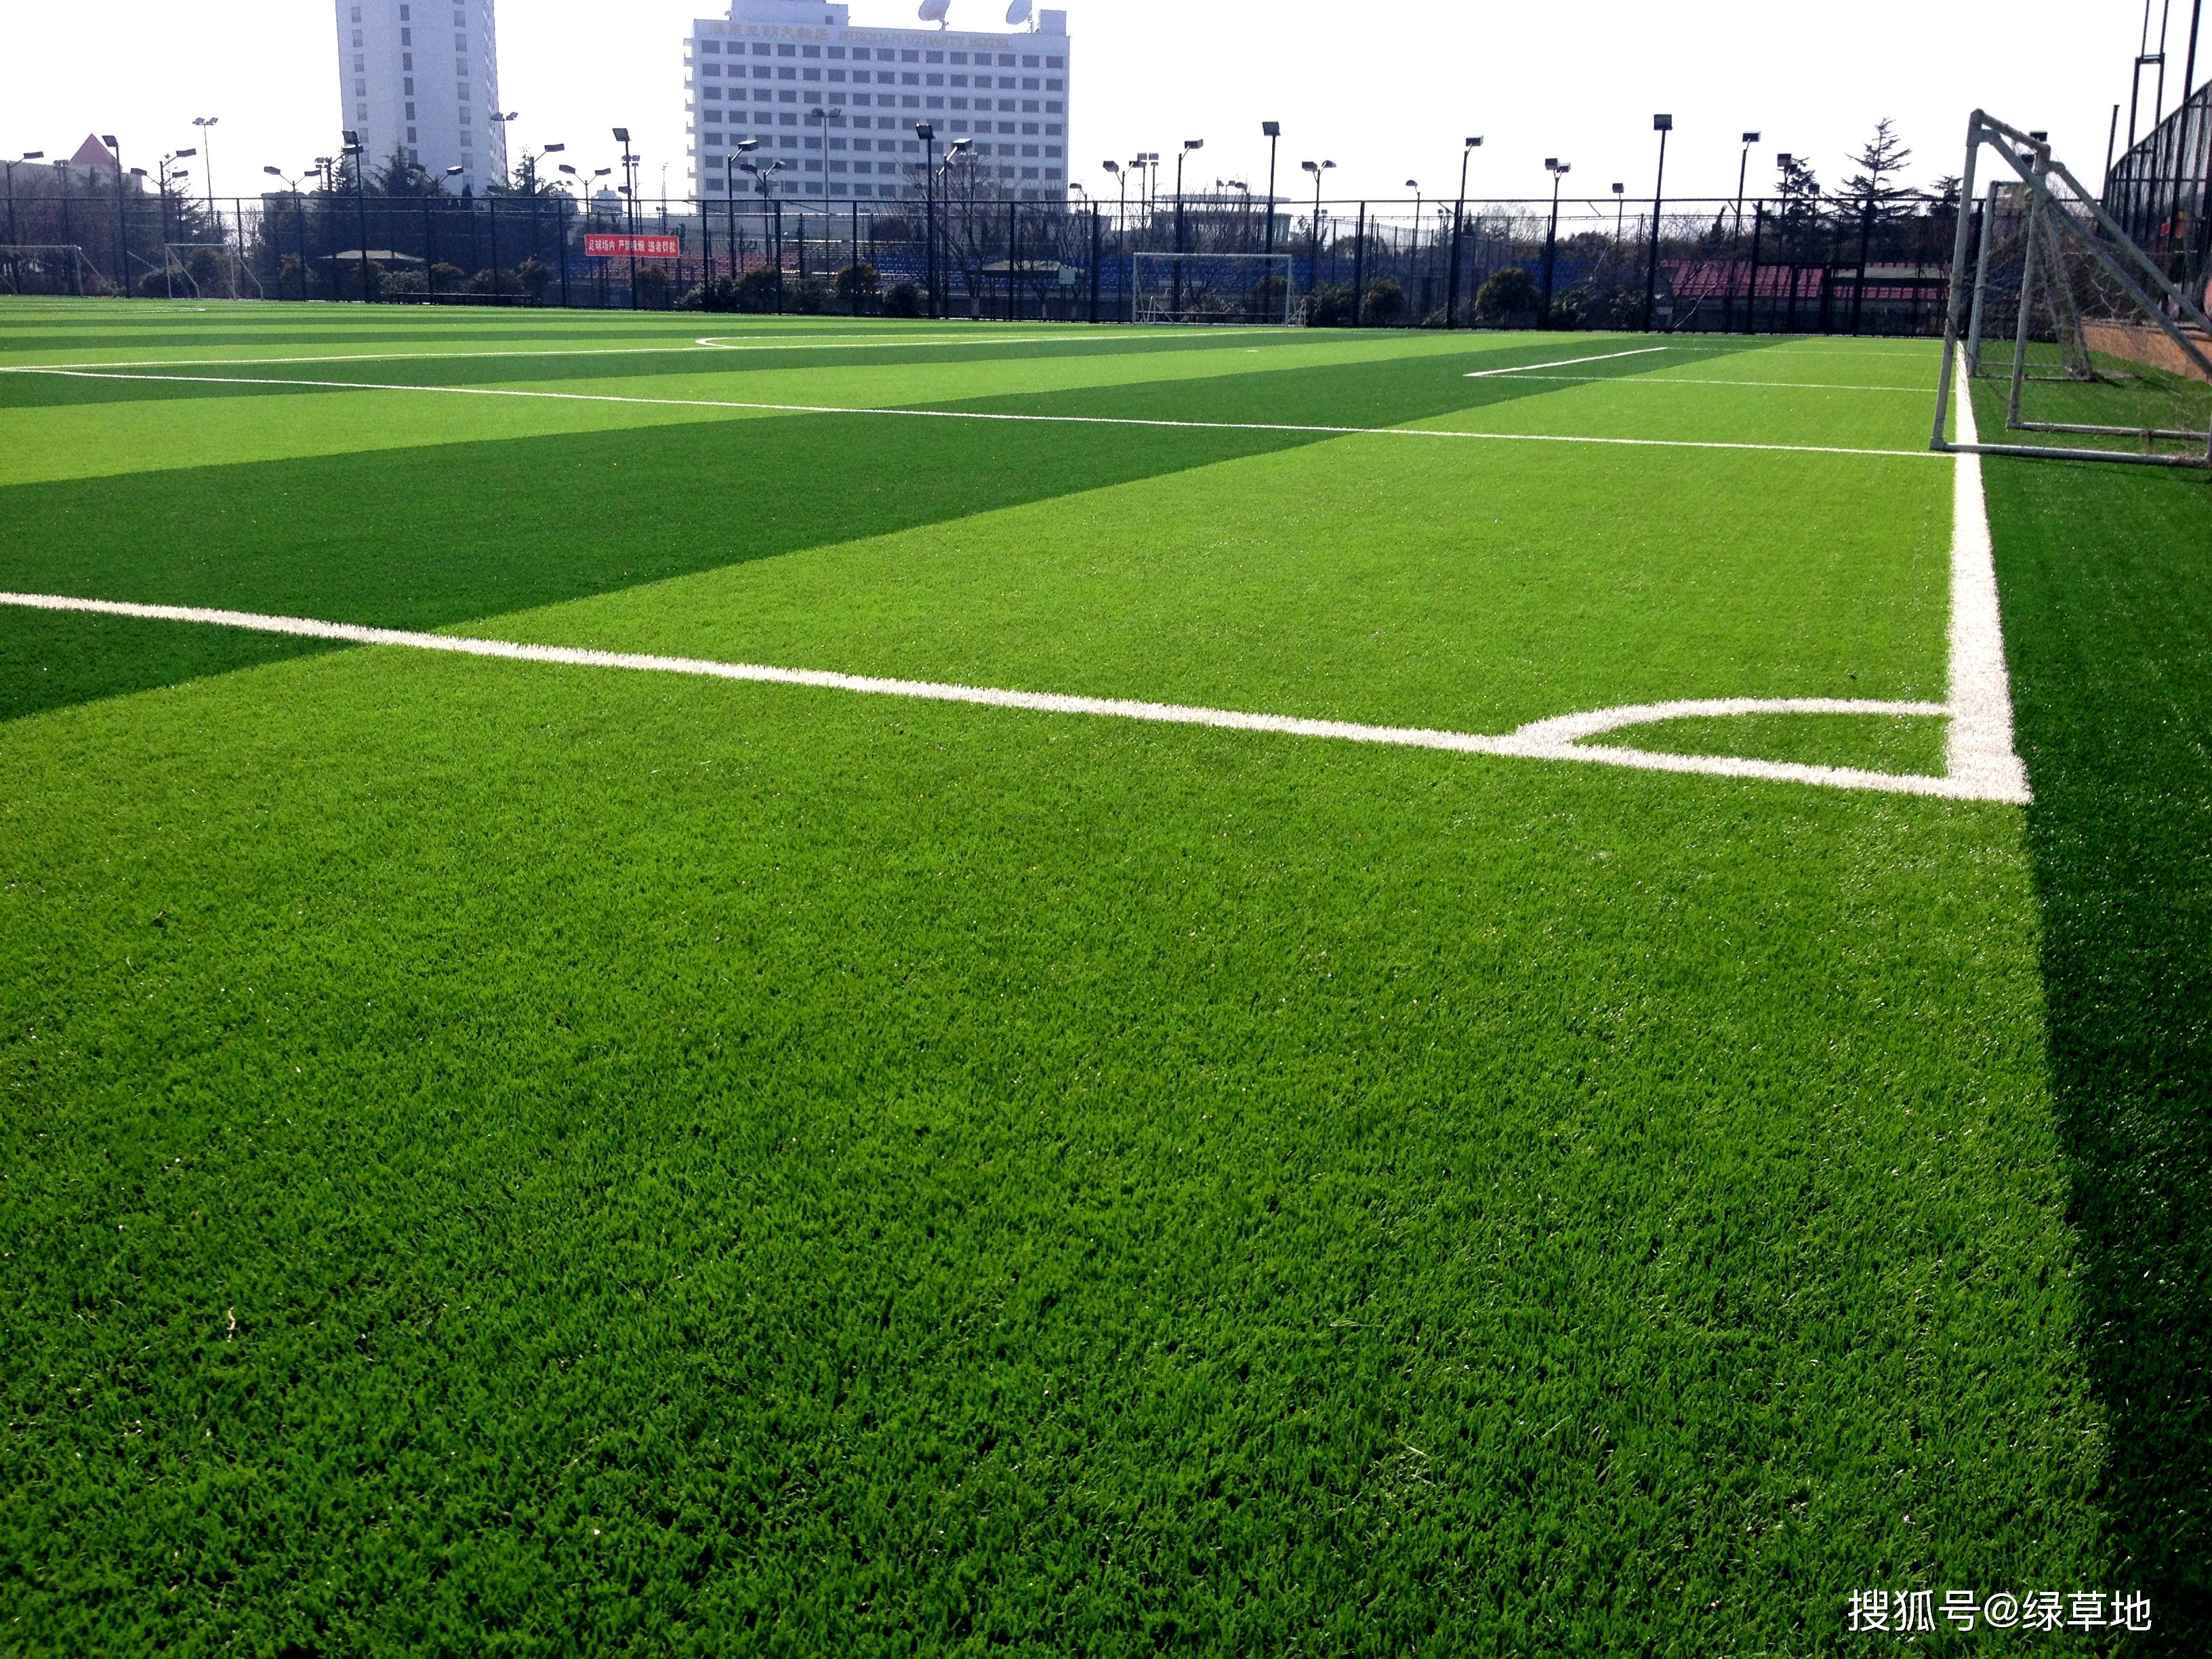 人造草坪具有良好的抗污性能和舒适度,是理想的室内足球场地面材料